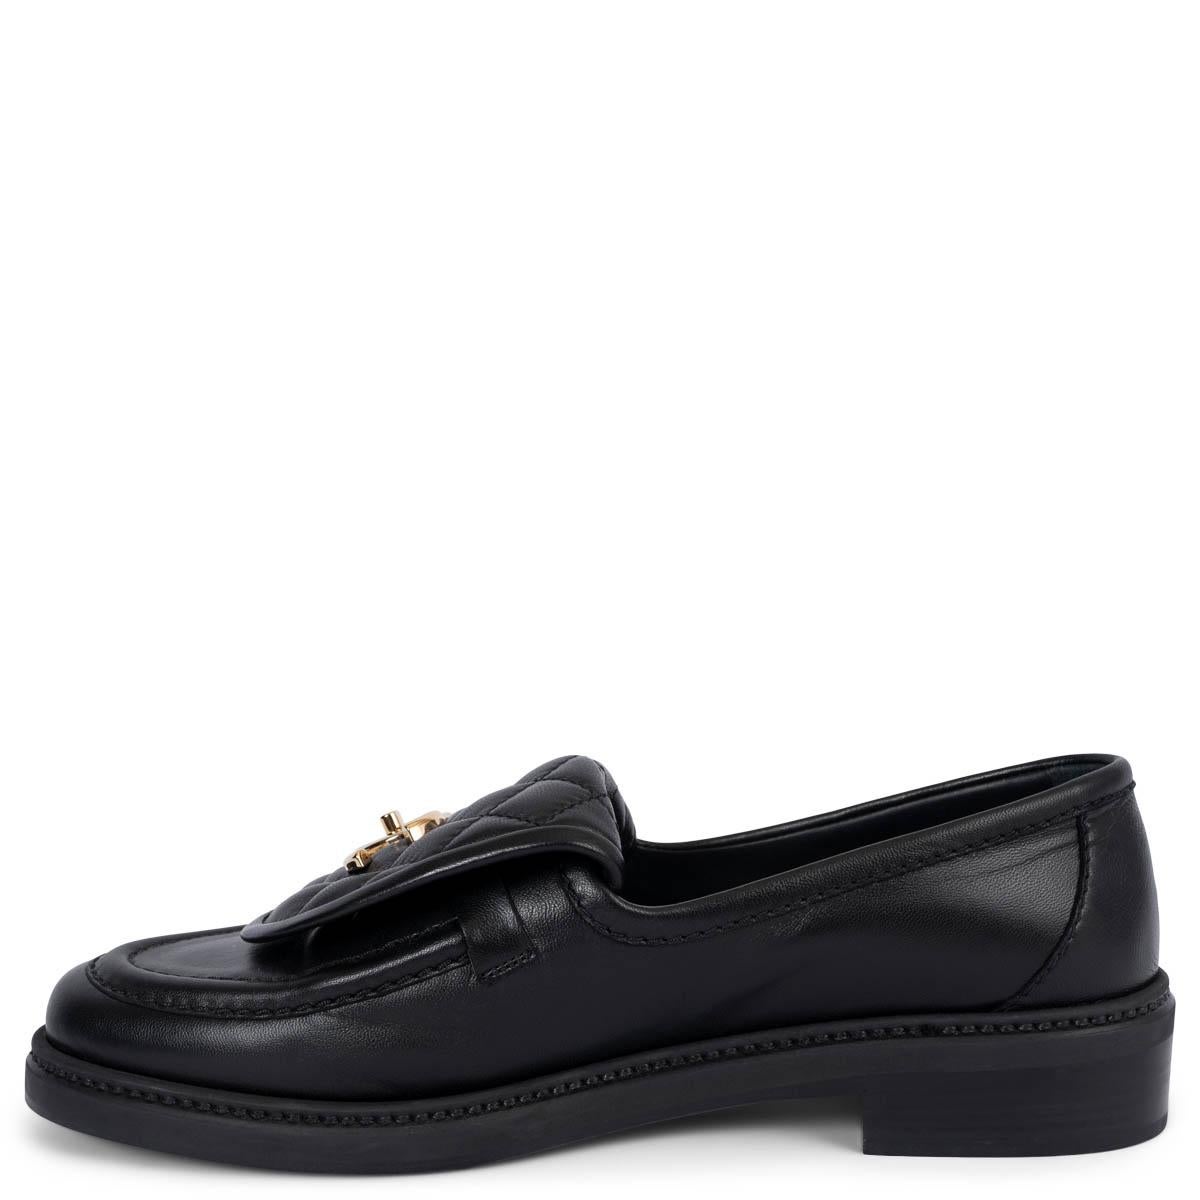 CHANEL cuir noir REV TURNLOCK Mocassins Chaussures 39 Pour femmes en vente